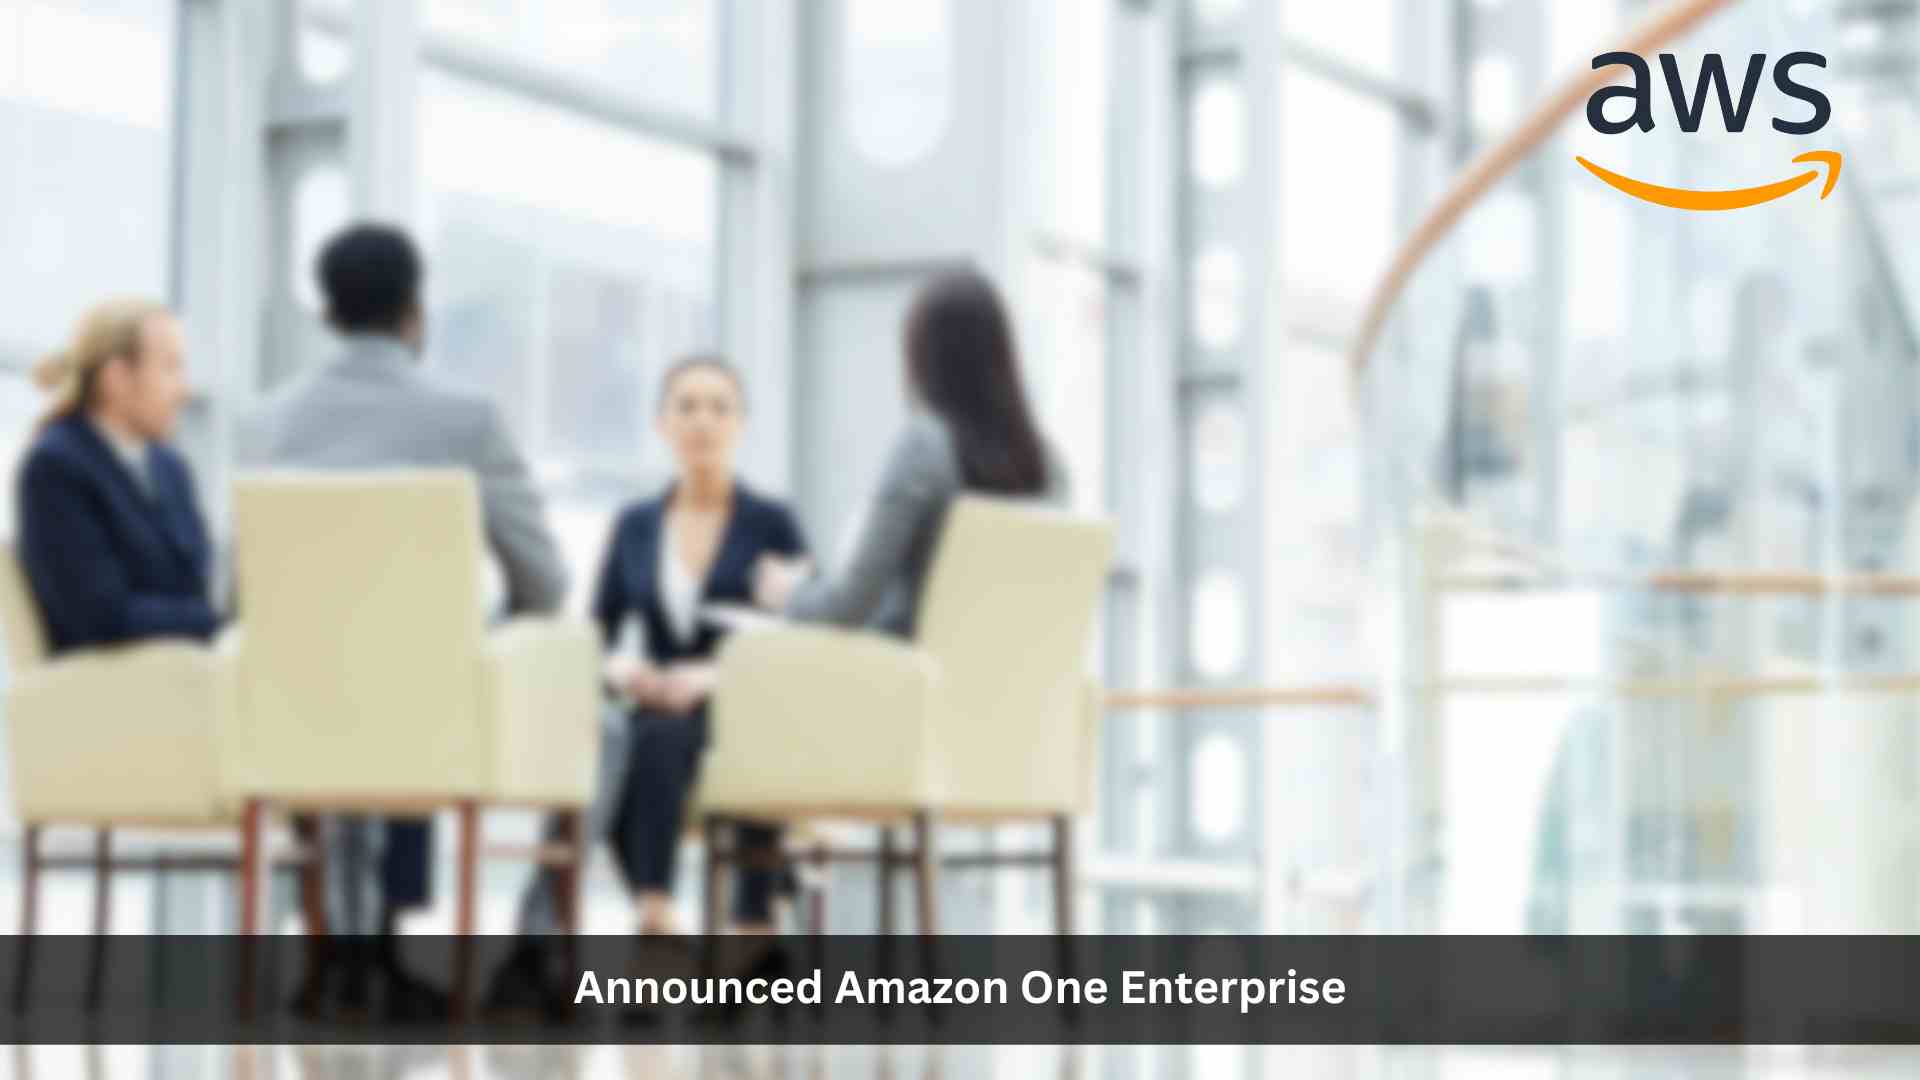 AWS Introduces Amazon One Enterprise